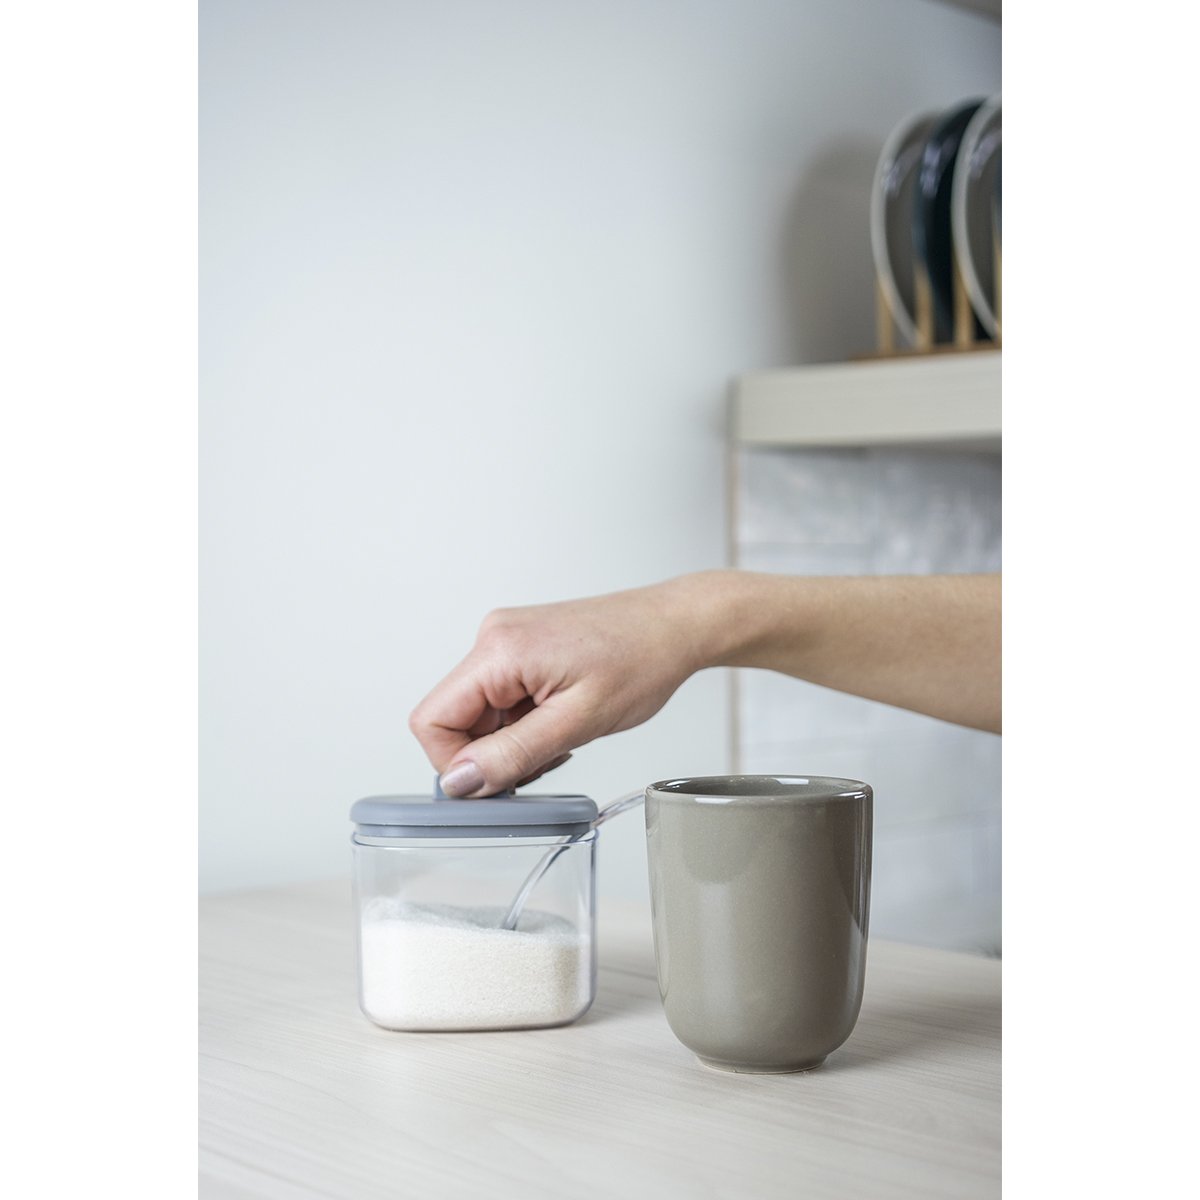 Kcasa - Salero y azucarero cocina blanco minimalista ceramica con